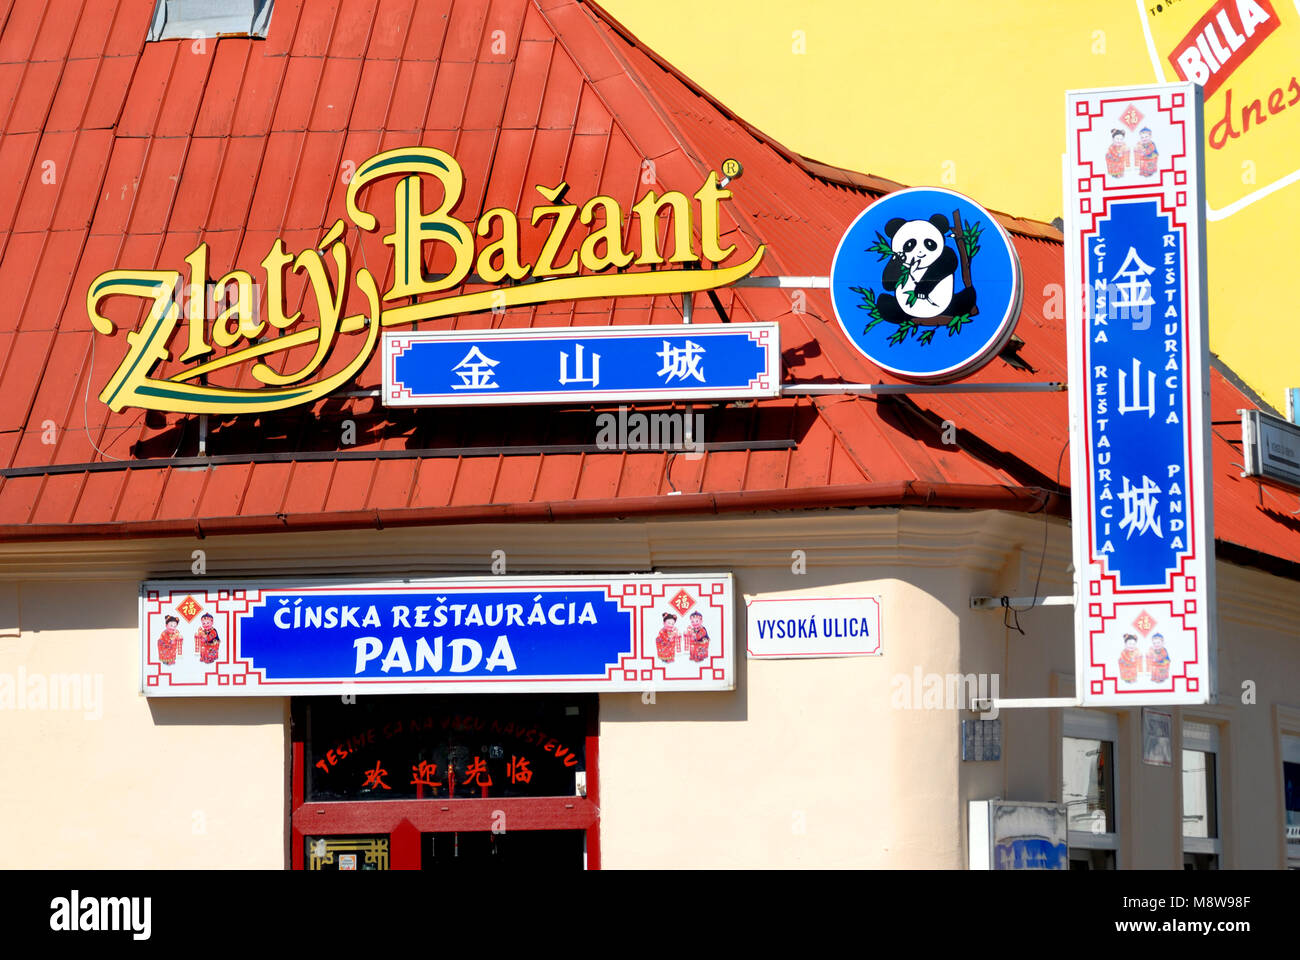 Bratislava, Slowakei. Das chinesische Restaurant "Panda" auf Vysoka ulica (Straße) Werbung für Zlaty Bazant (Goldener Fasan Bier) Stockfoto